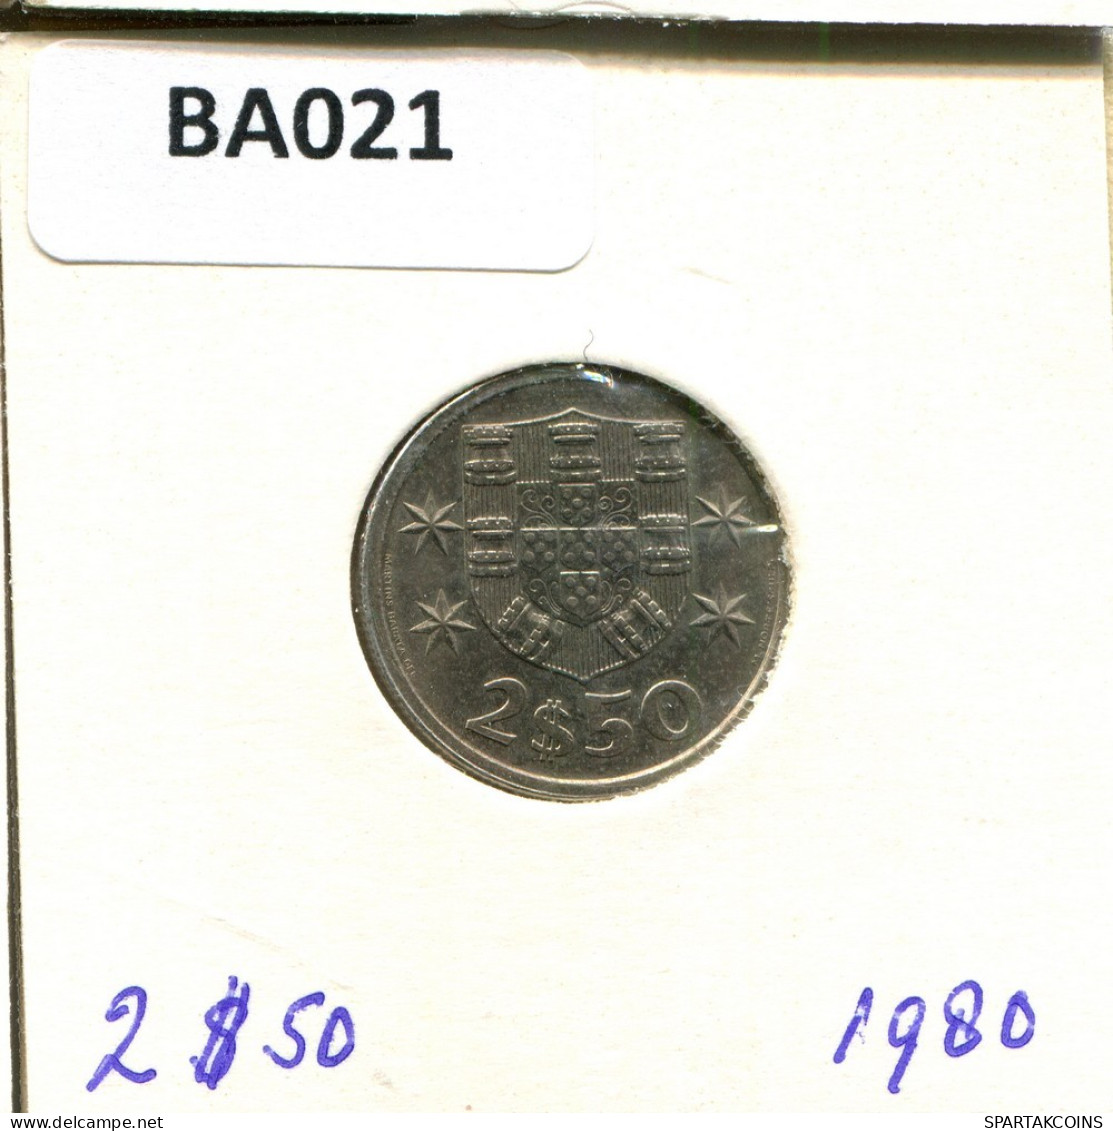 2 $ 50 ESCUDOS 1980 PORTUGAL Coin #BA021.U.A - Portogallo